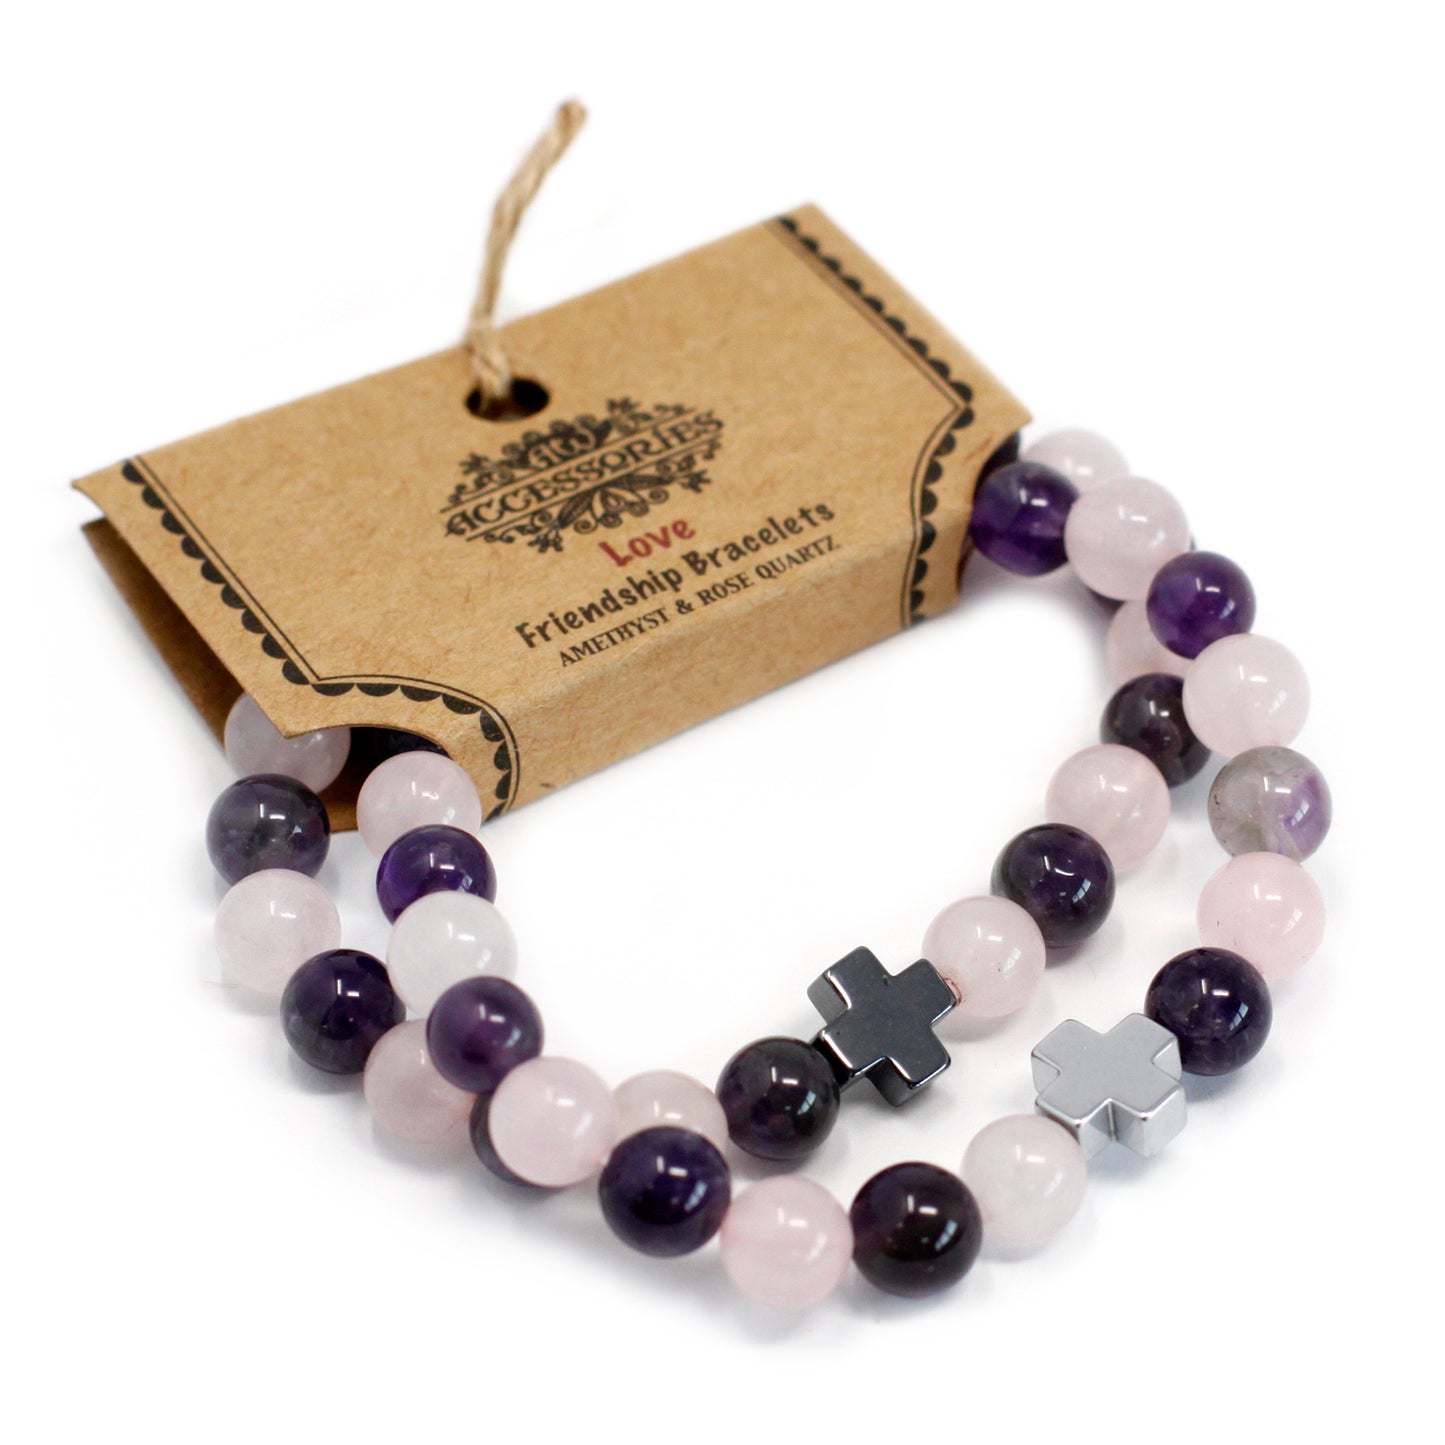 Gemstones Friendship Bracelets - Sets of 2